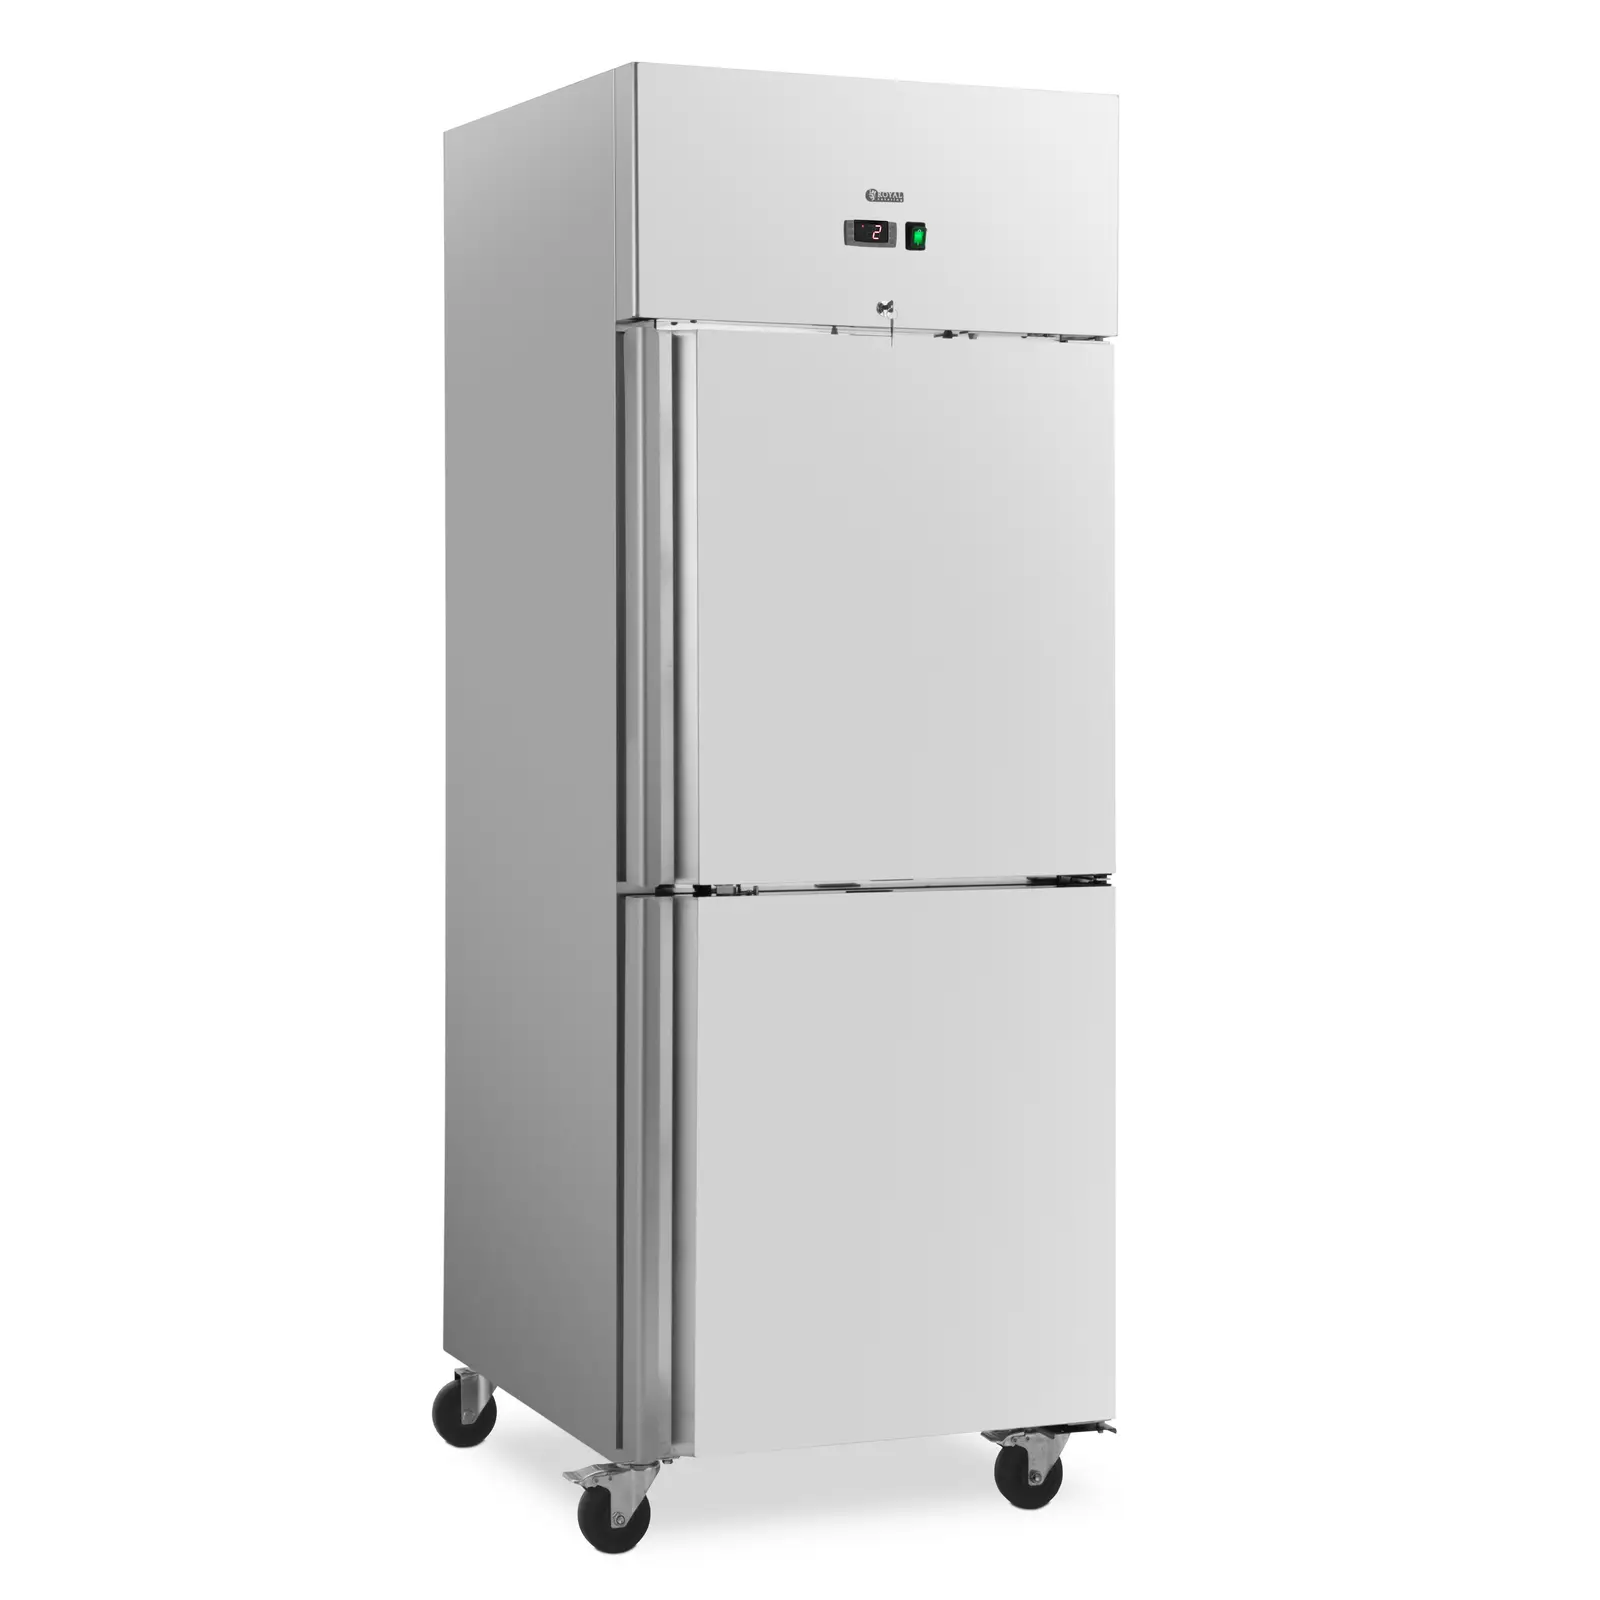 Refrigerador para gastronomía - 485 L - acero inoxidable - 2 puertas - 4 ruedas - con cerradura - Royal Catering